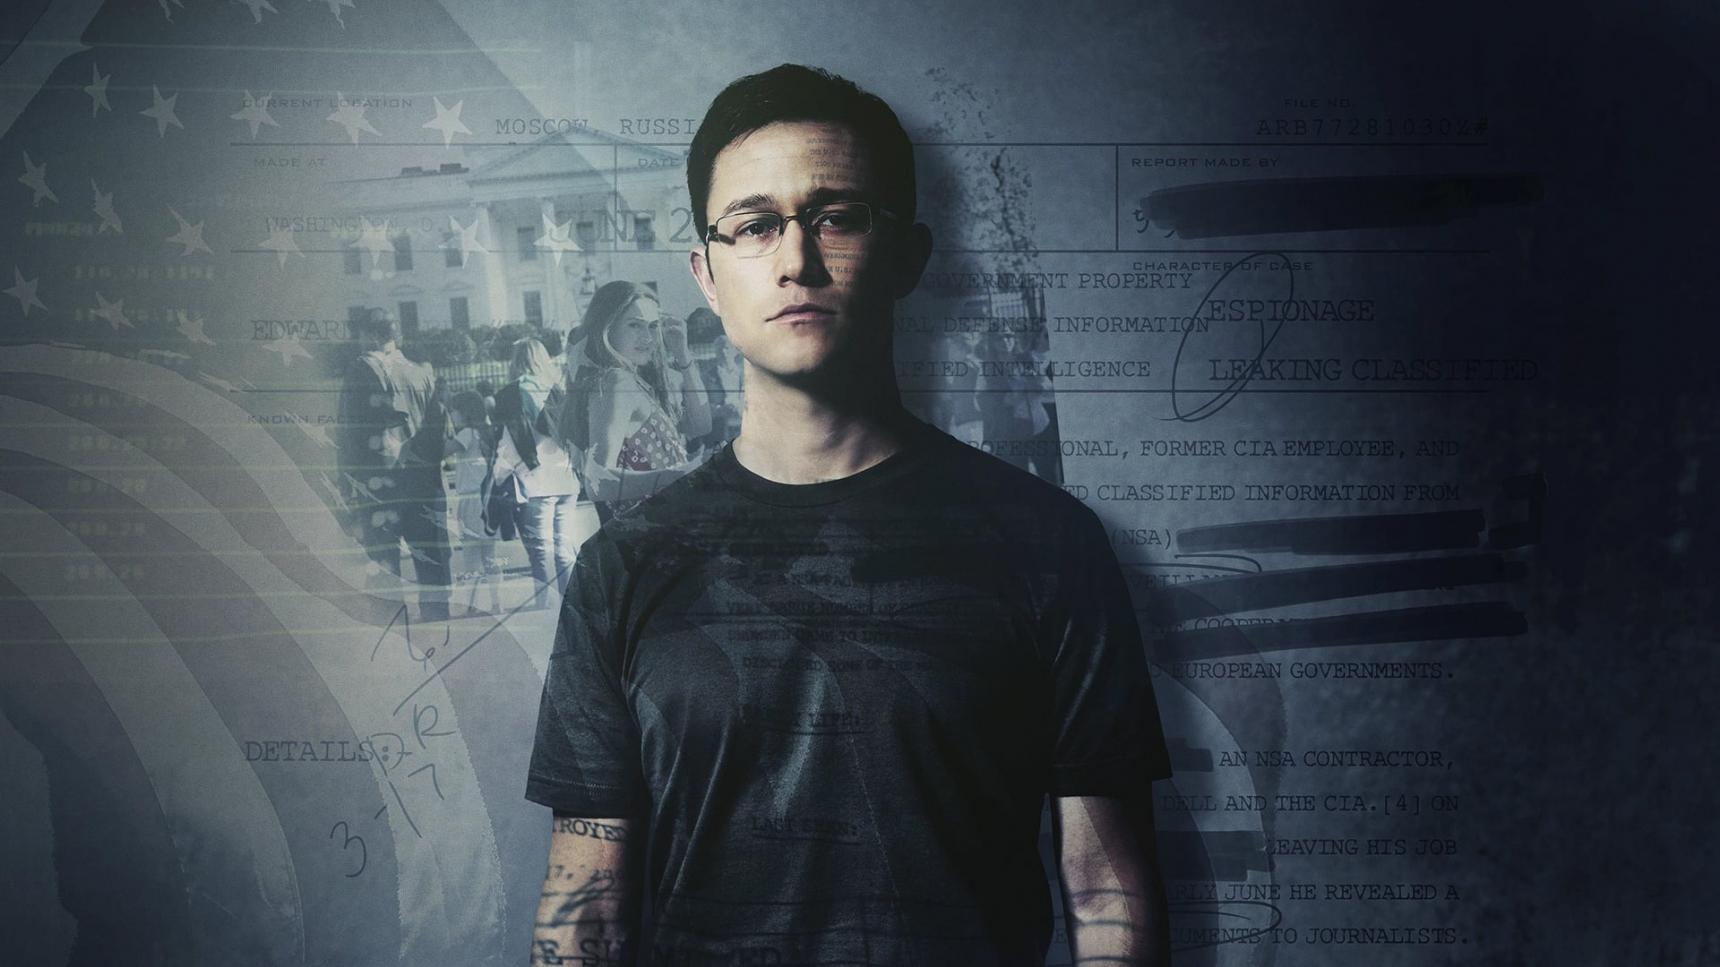 Fondo de pantalla de la película Edward Snowden en Cuevana 3 gratis